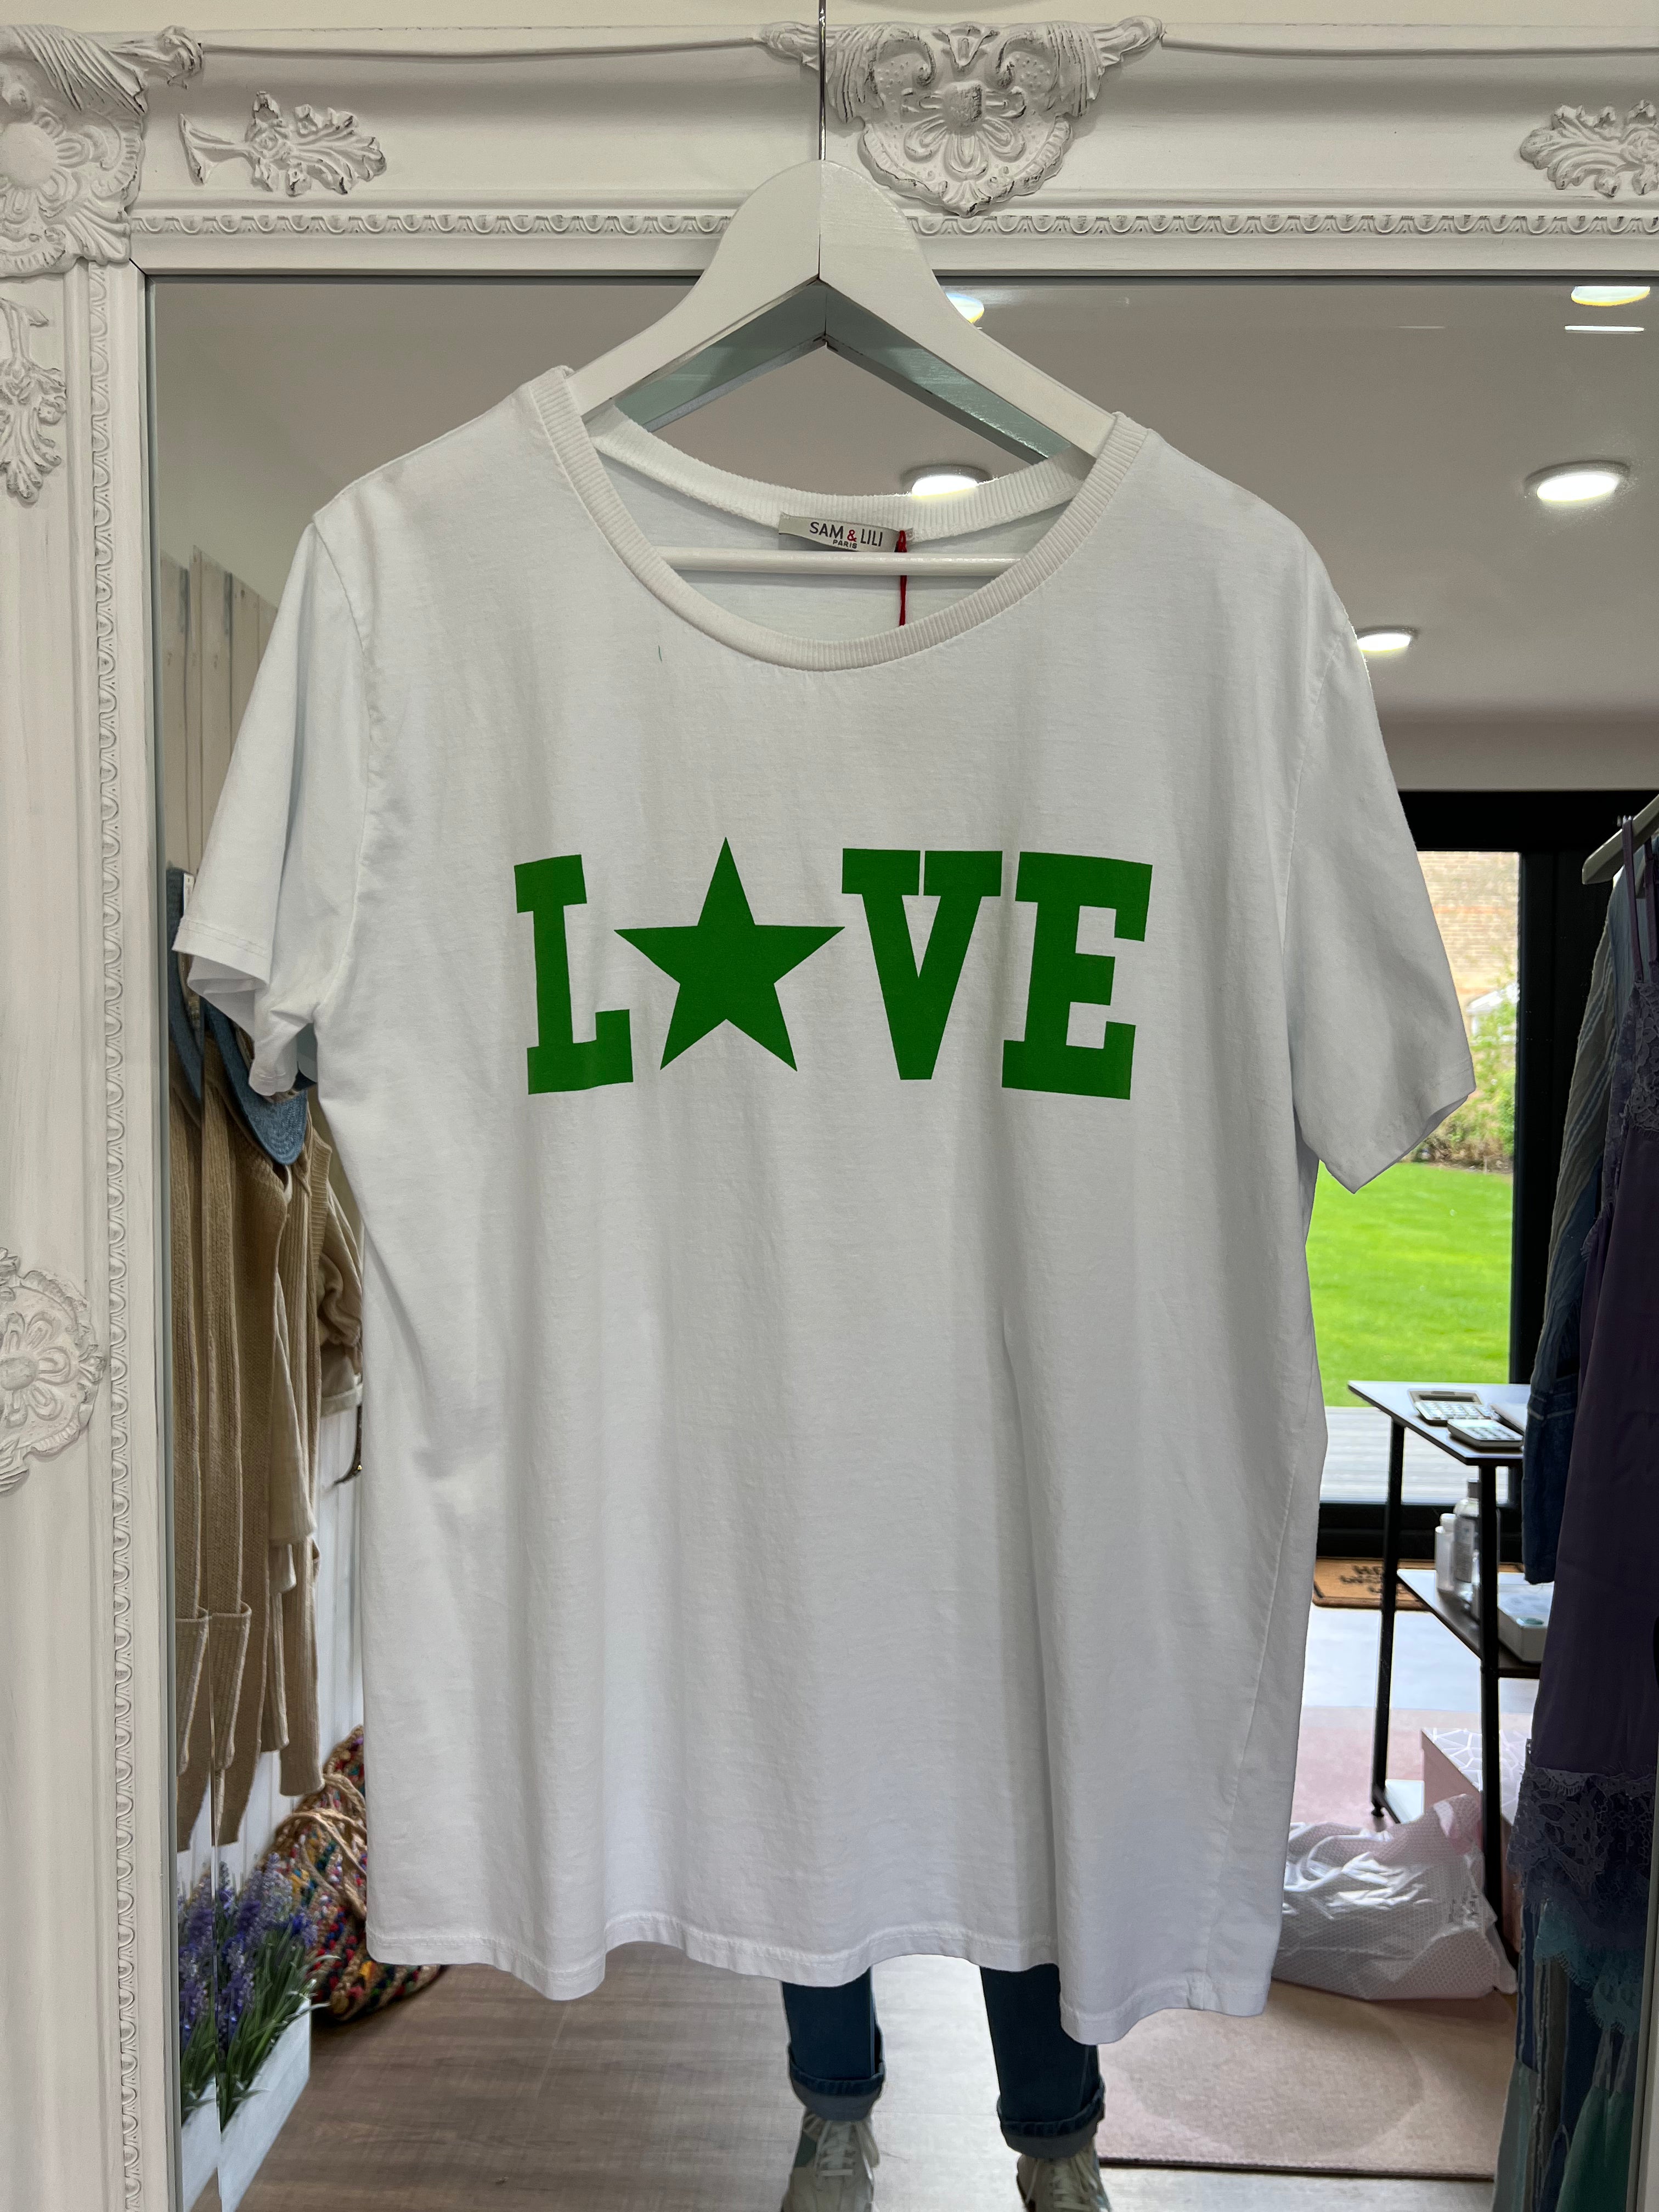 Love Tshirt - 1 Left! - Sam & Lilli